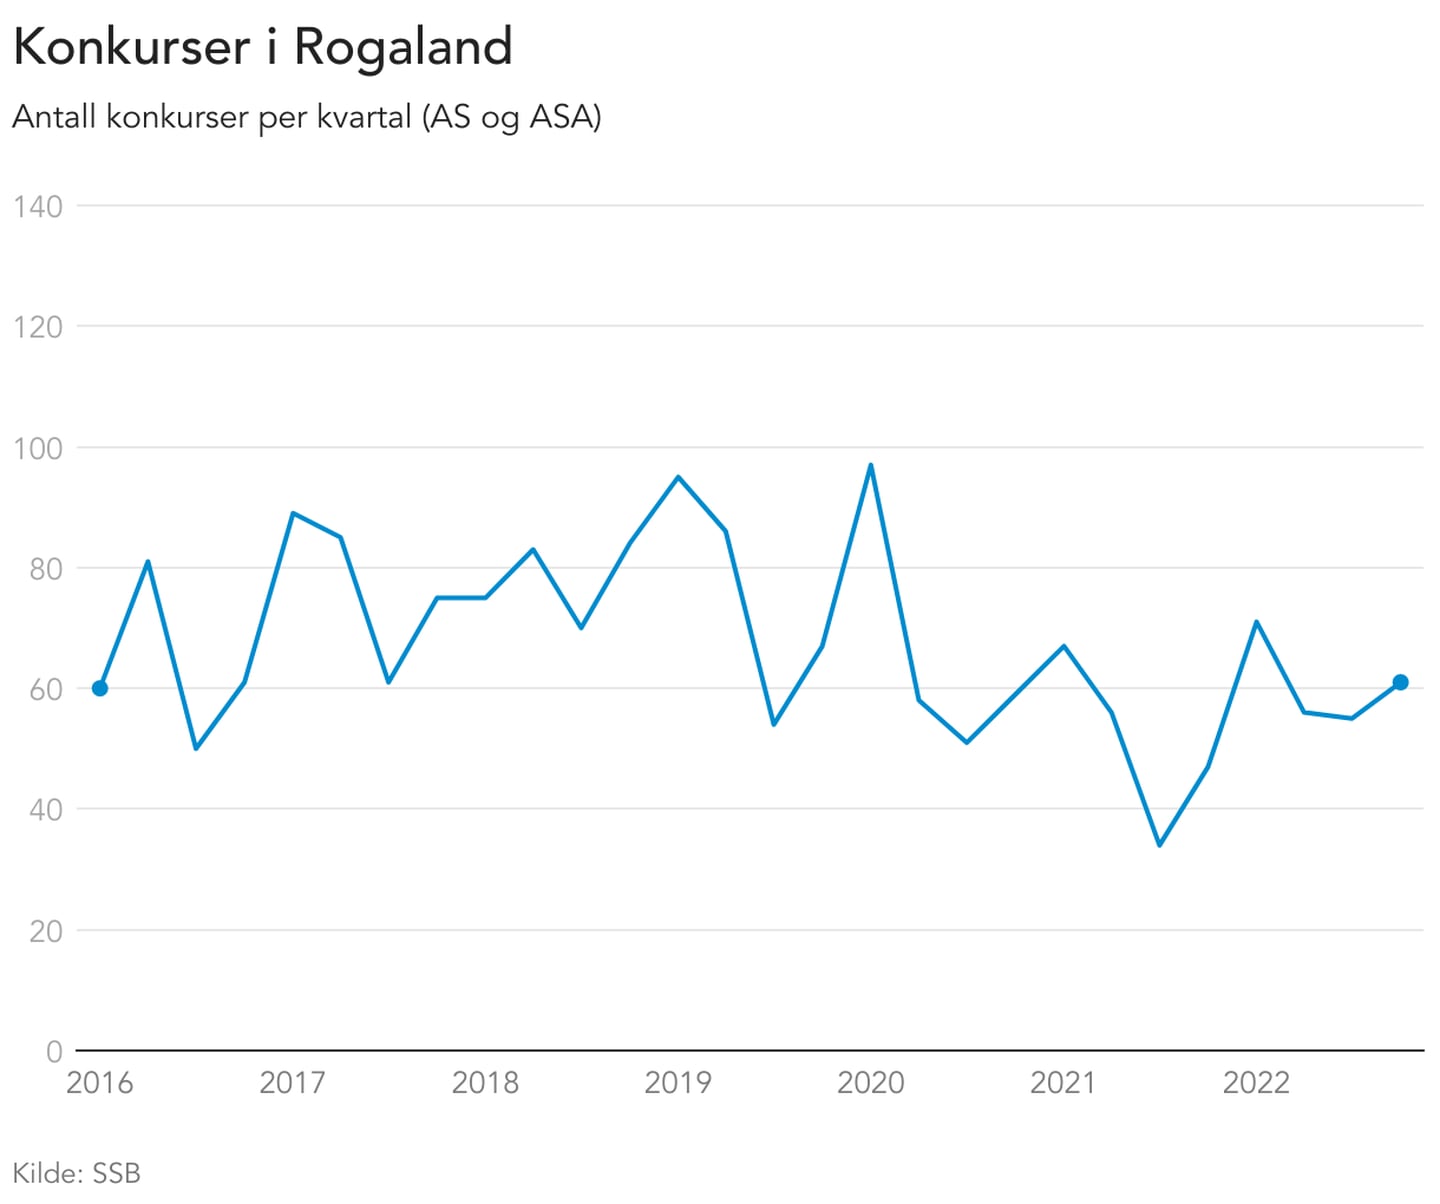 Det har vært en liten økning i antall konkurser i Rogaland, men tallet er lavt sammenlignet med tidligere år.